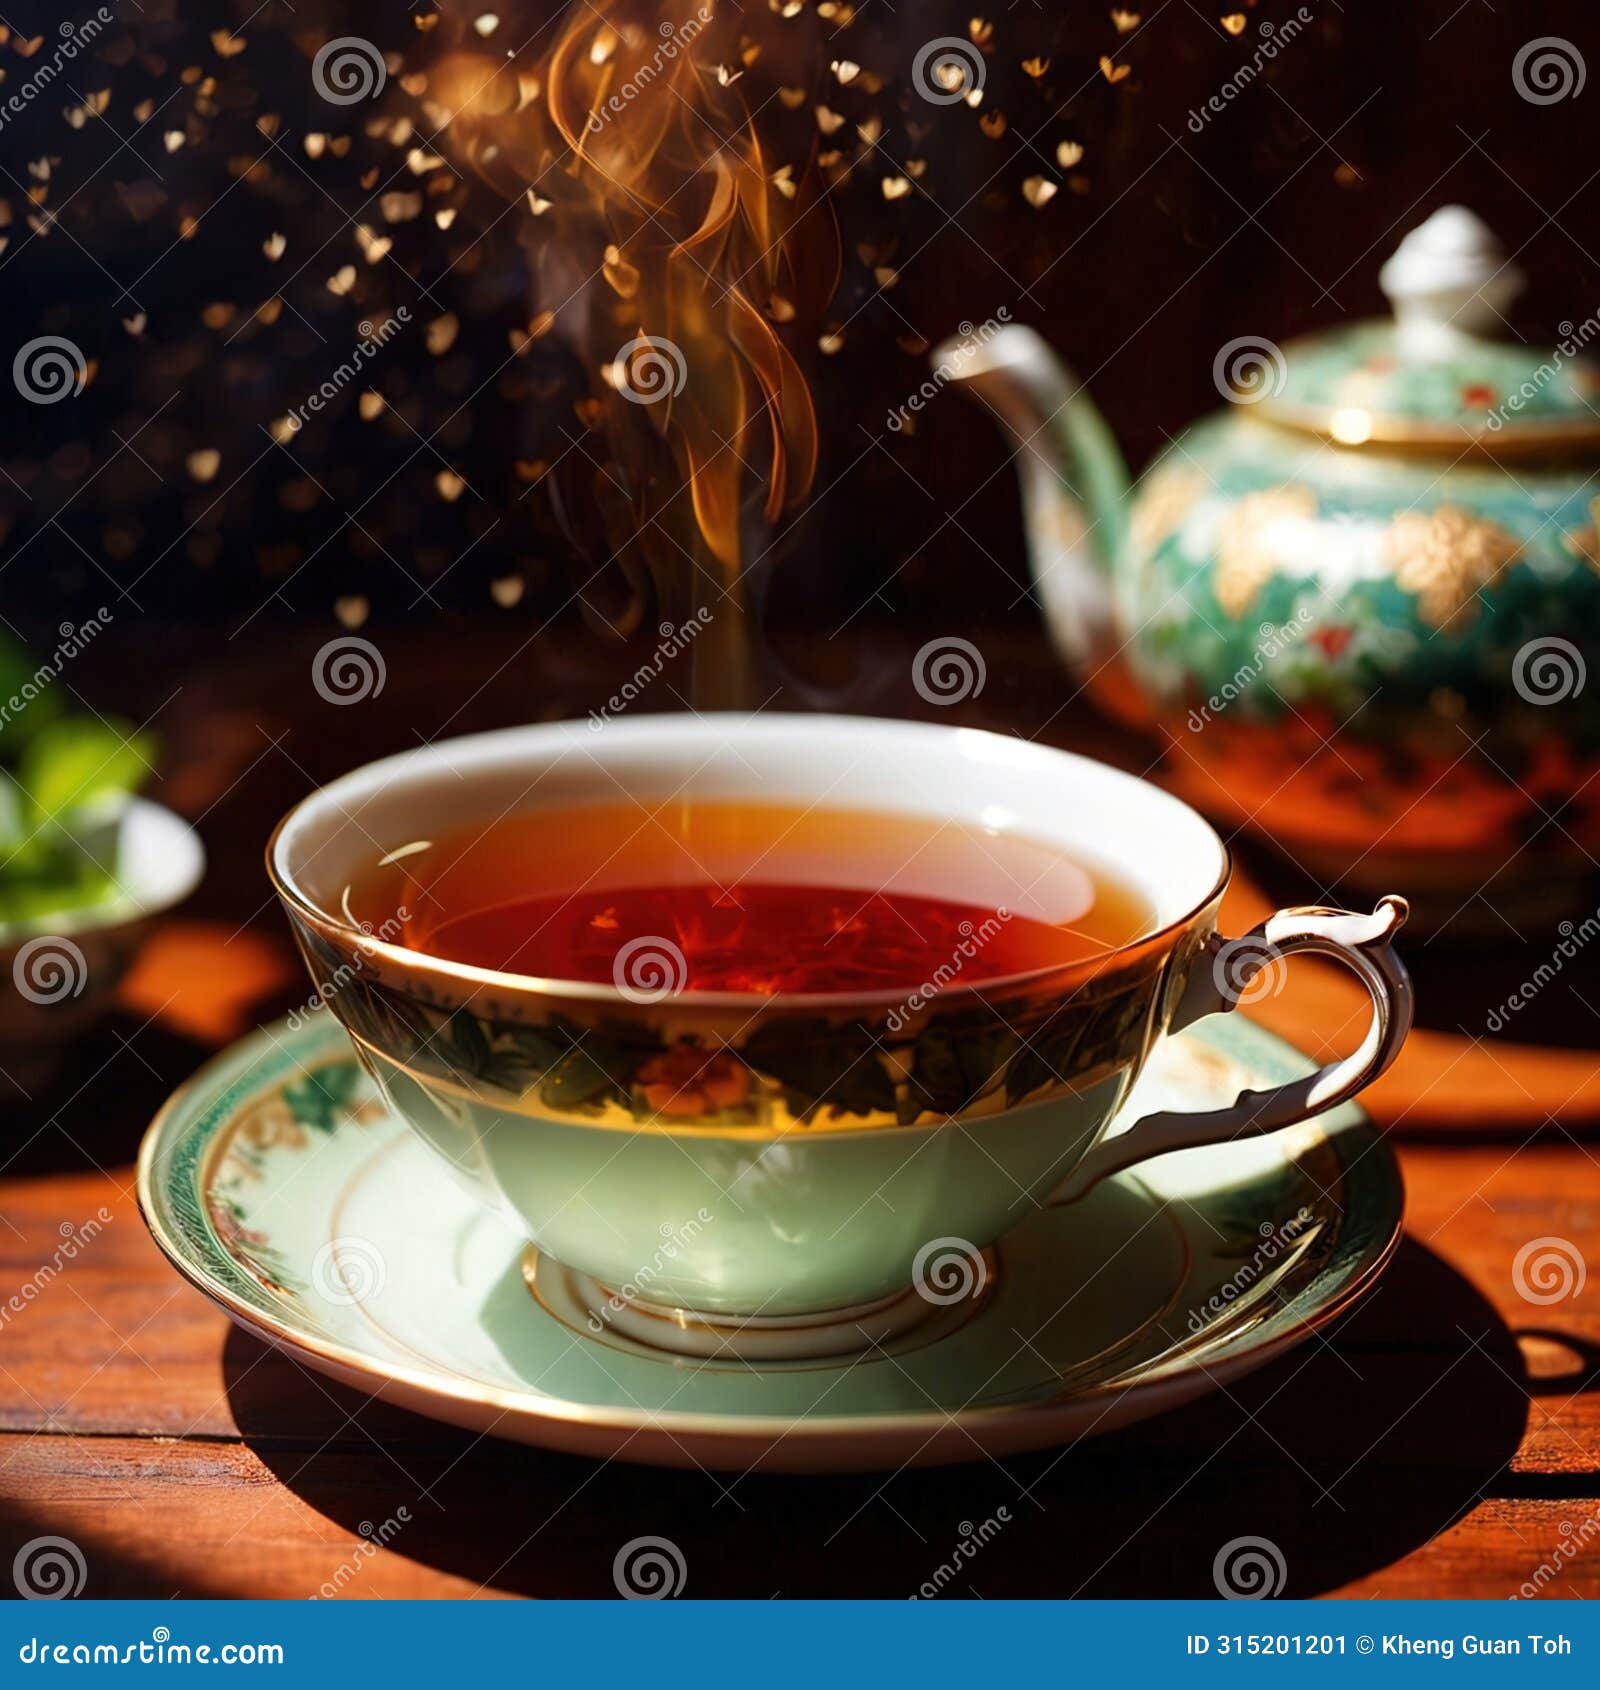 tea, fresh brewed black tea in cup with tea leaves